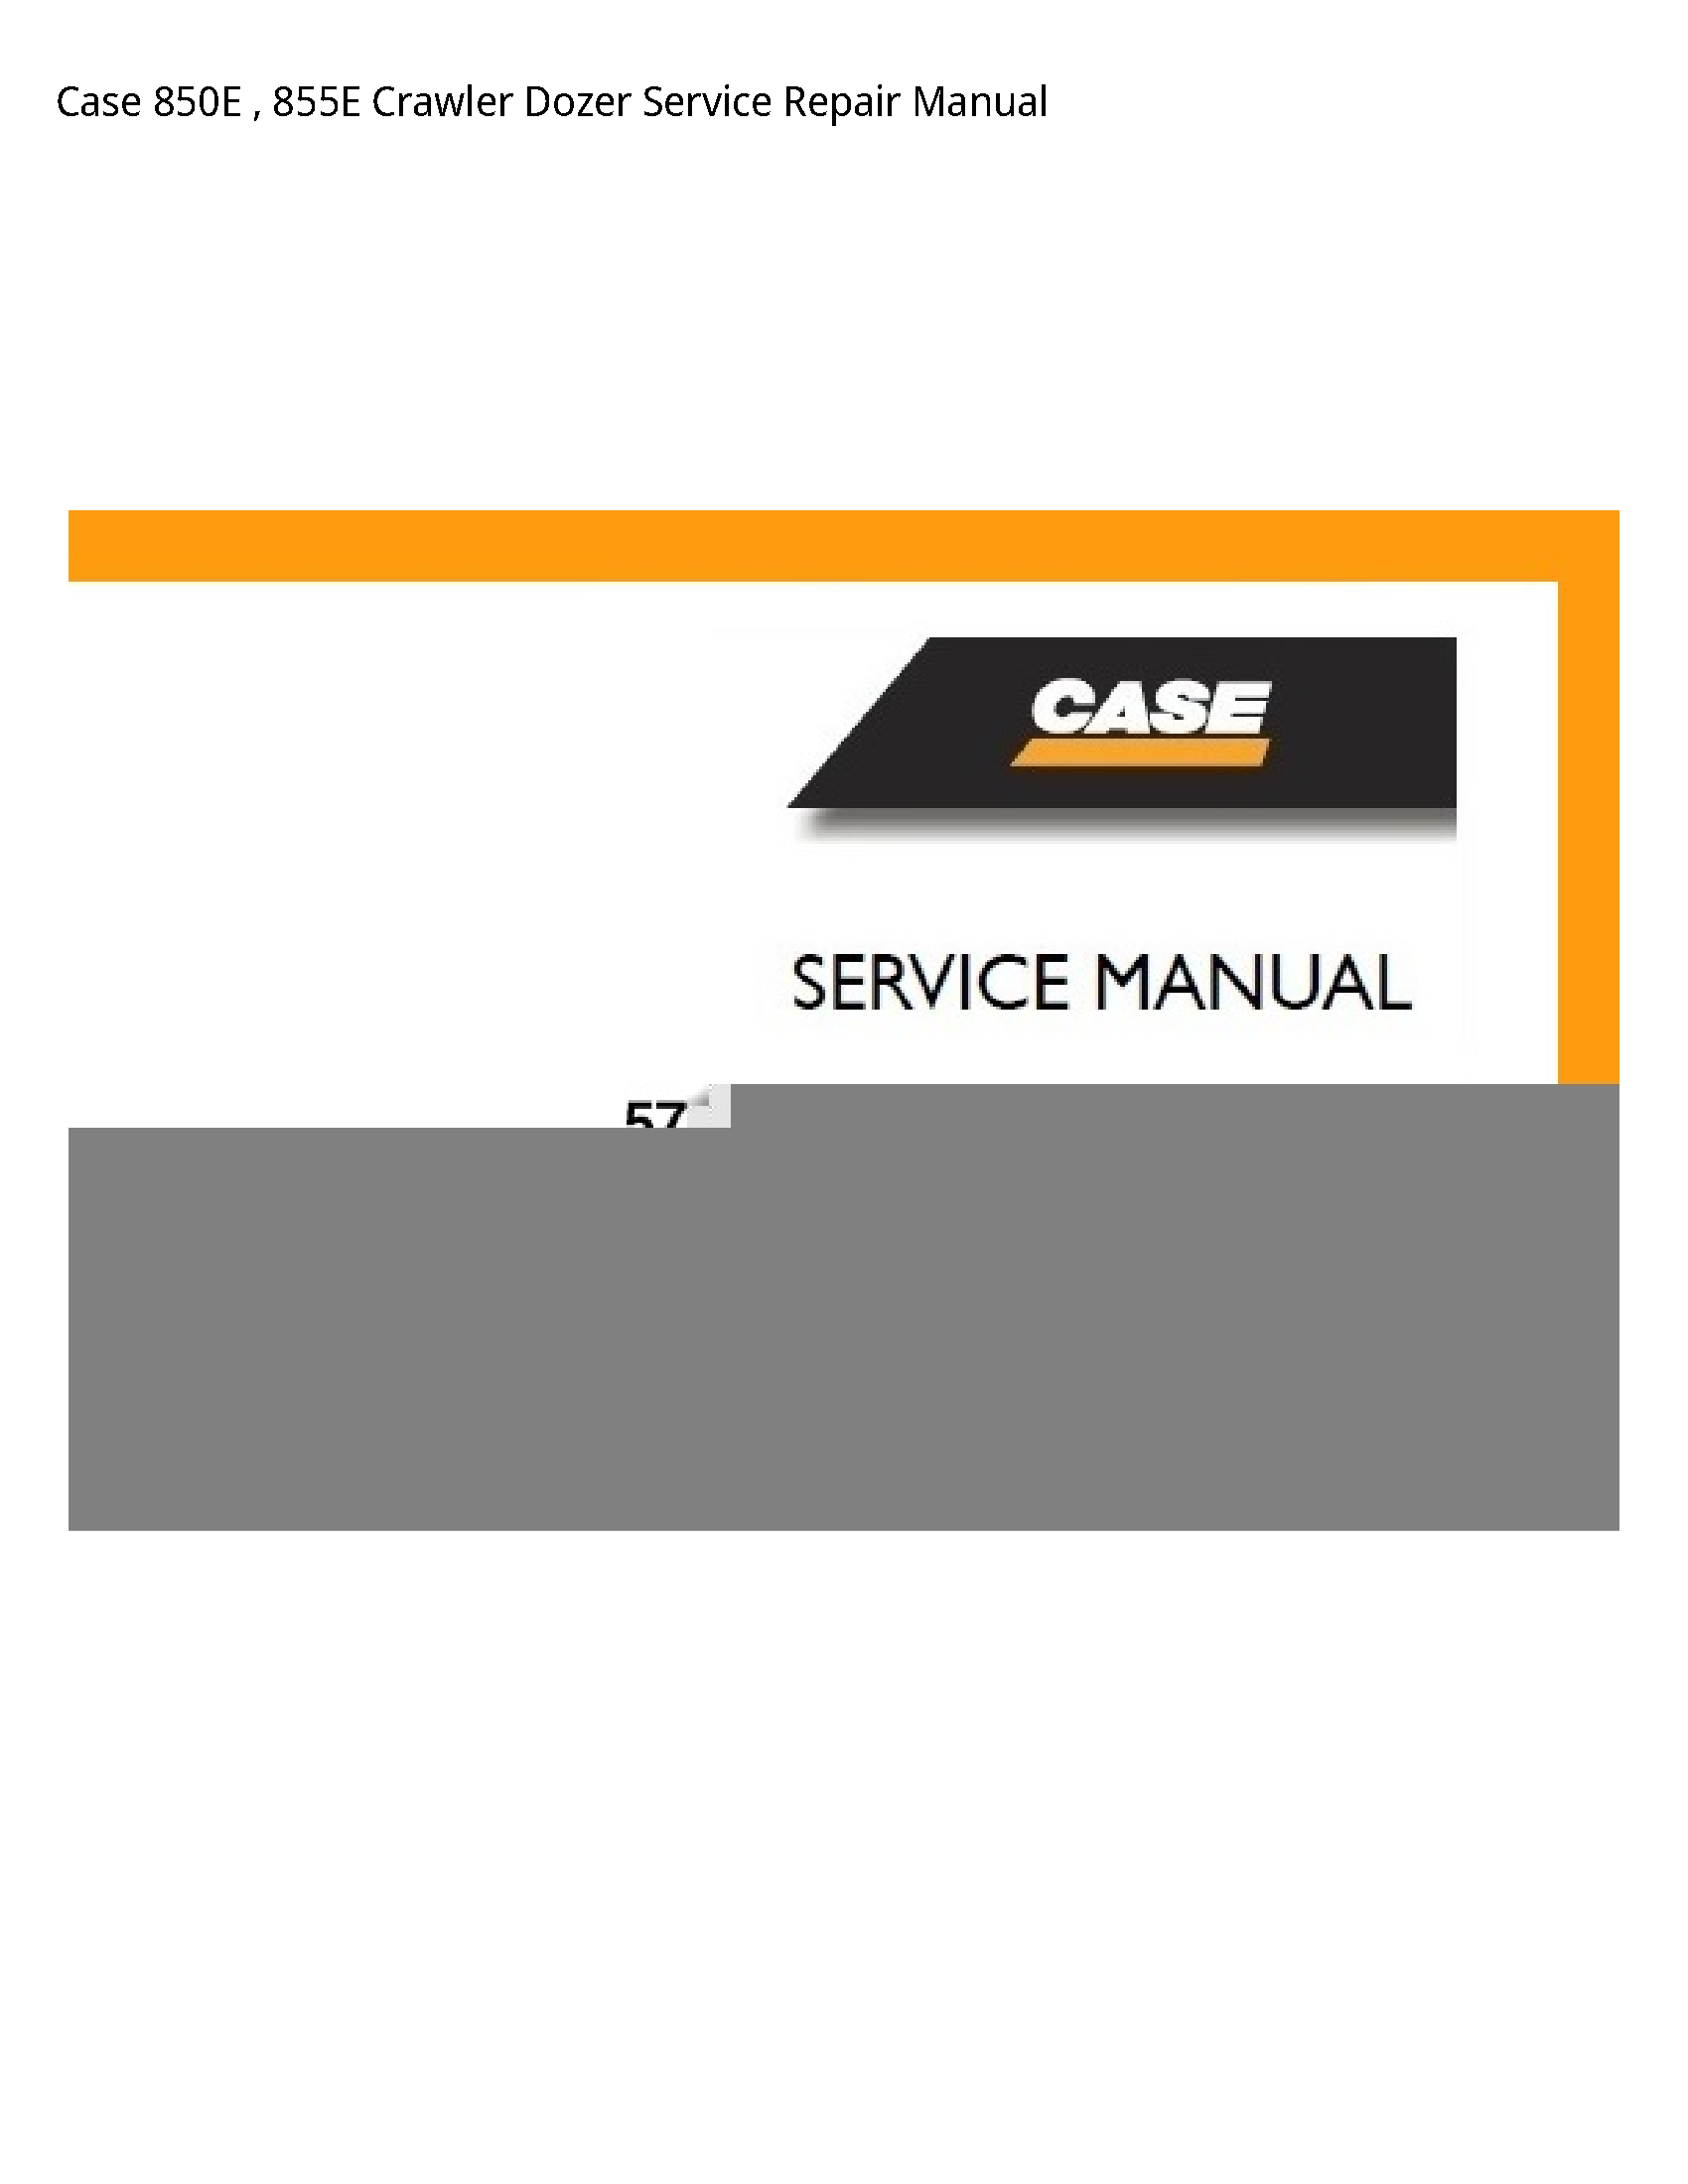 Case/Case IH 850E Crawler Dozer manual